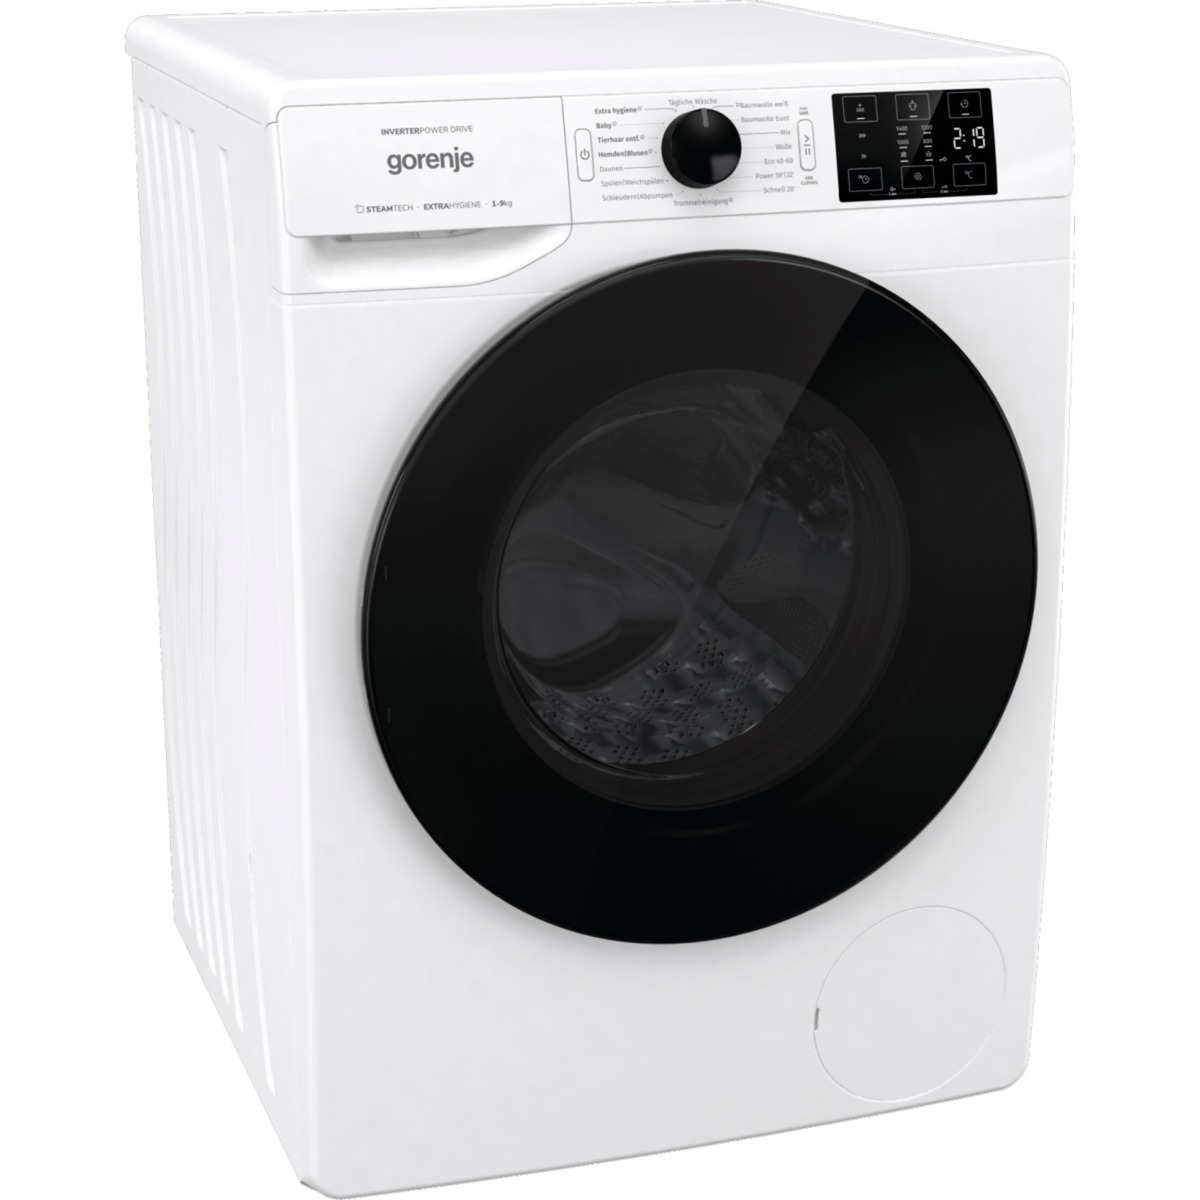 WNEI94DAPS, Waschmaschine von Gorenje